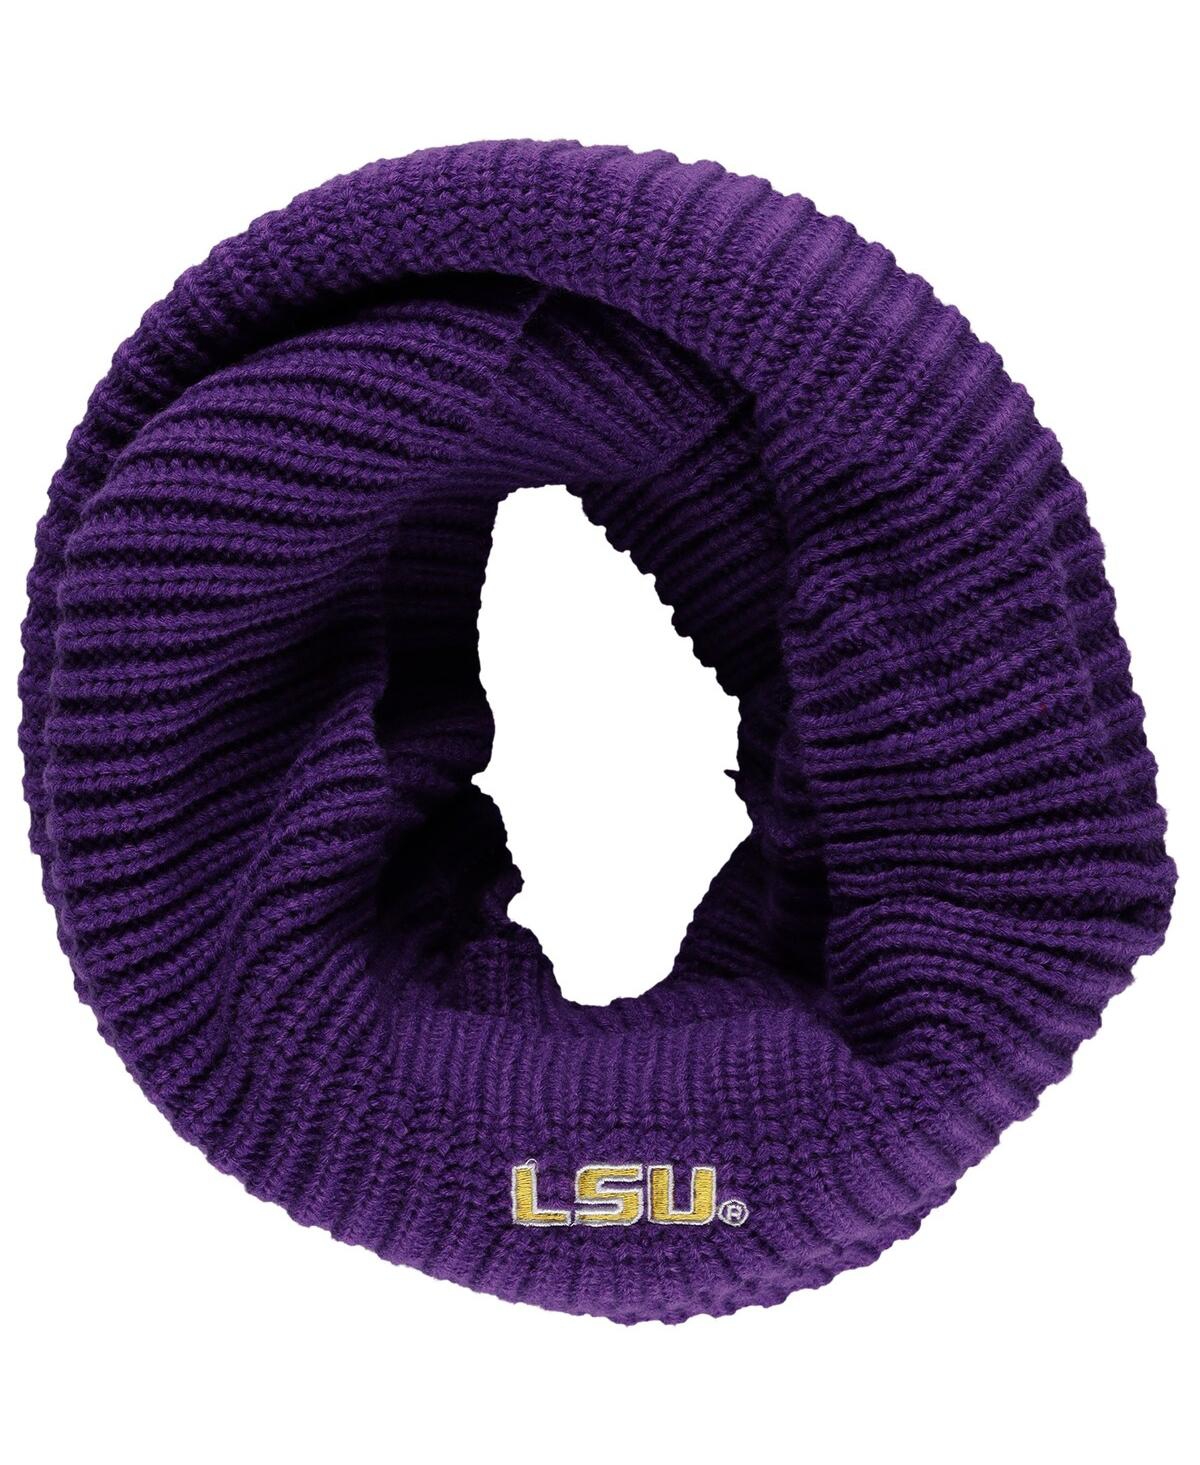 Women's ZooZatz Lsu Tigers Knit Cowl Infinity Scarf - Purple